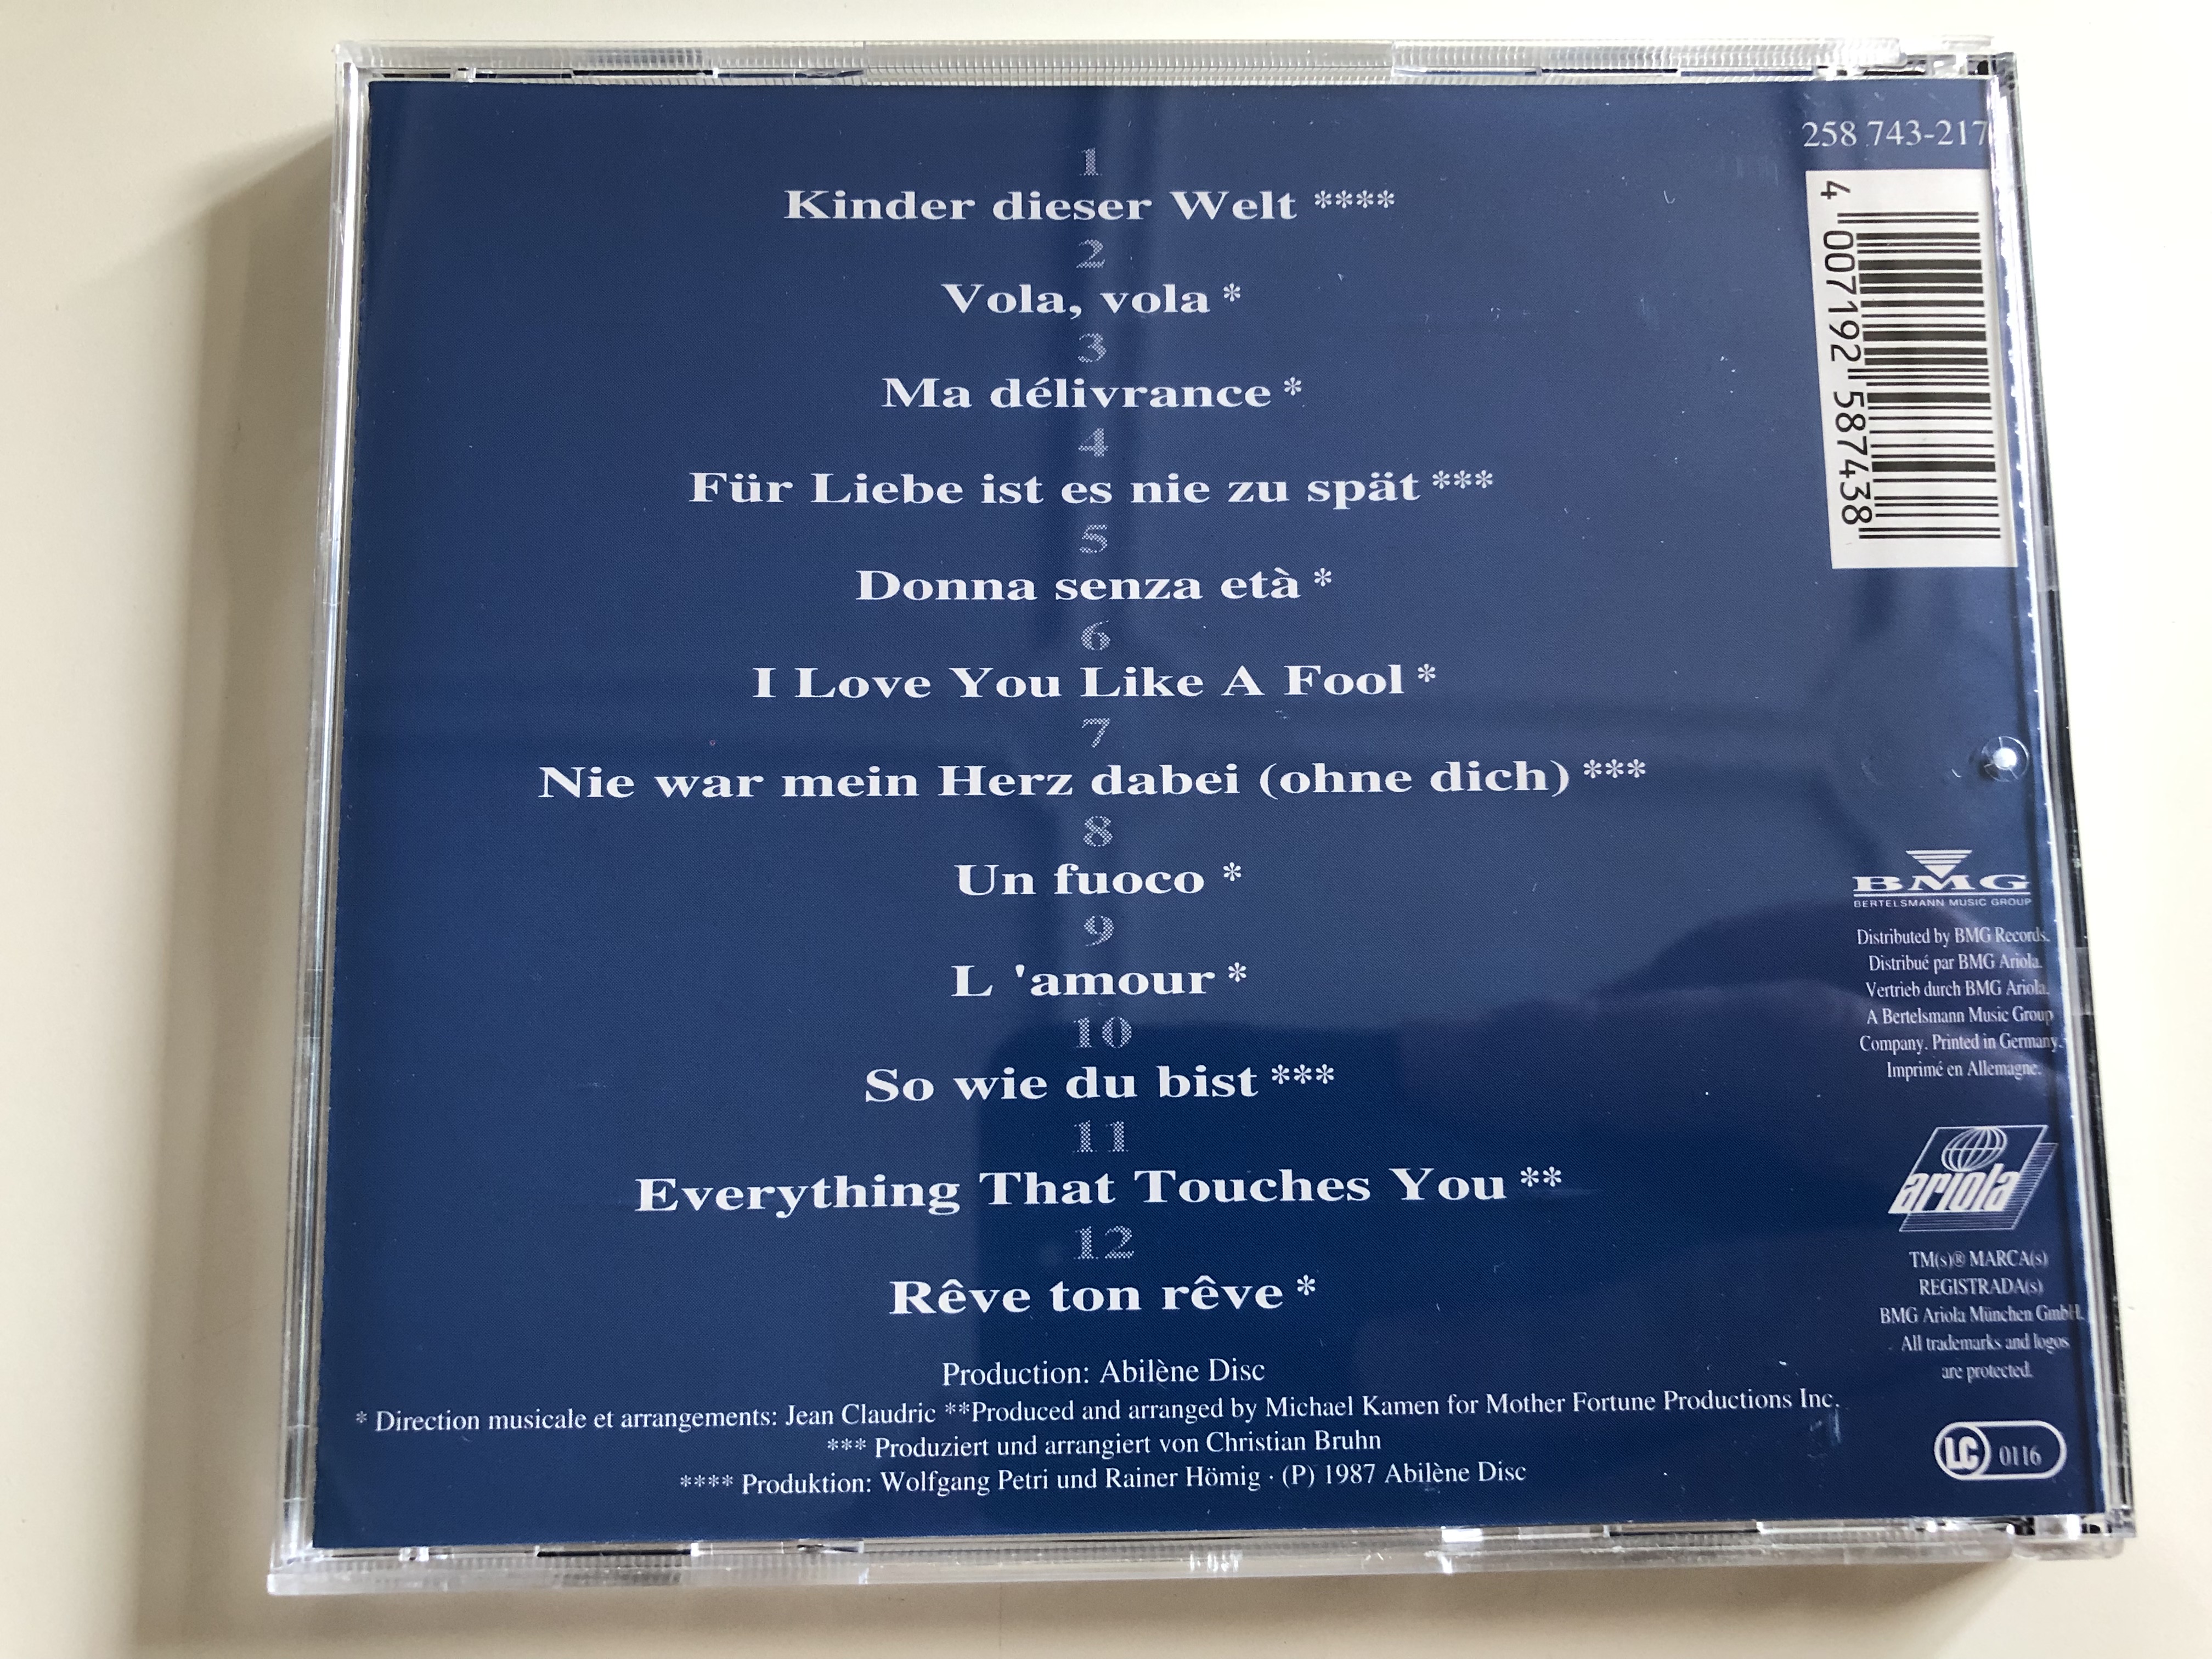 mireille-mathieu-neue-schlager-aus-europa-in-4-sprachen-tour-de-l-europe-audio-cd-1991-ariola-bmg-258-743-217-4-.jpg